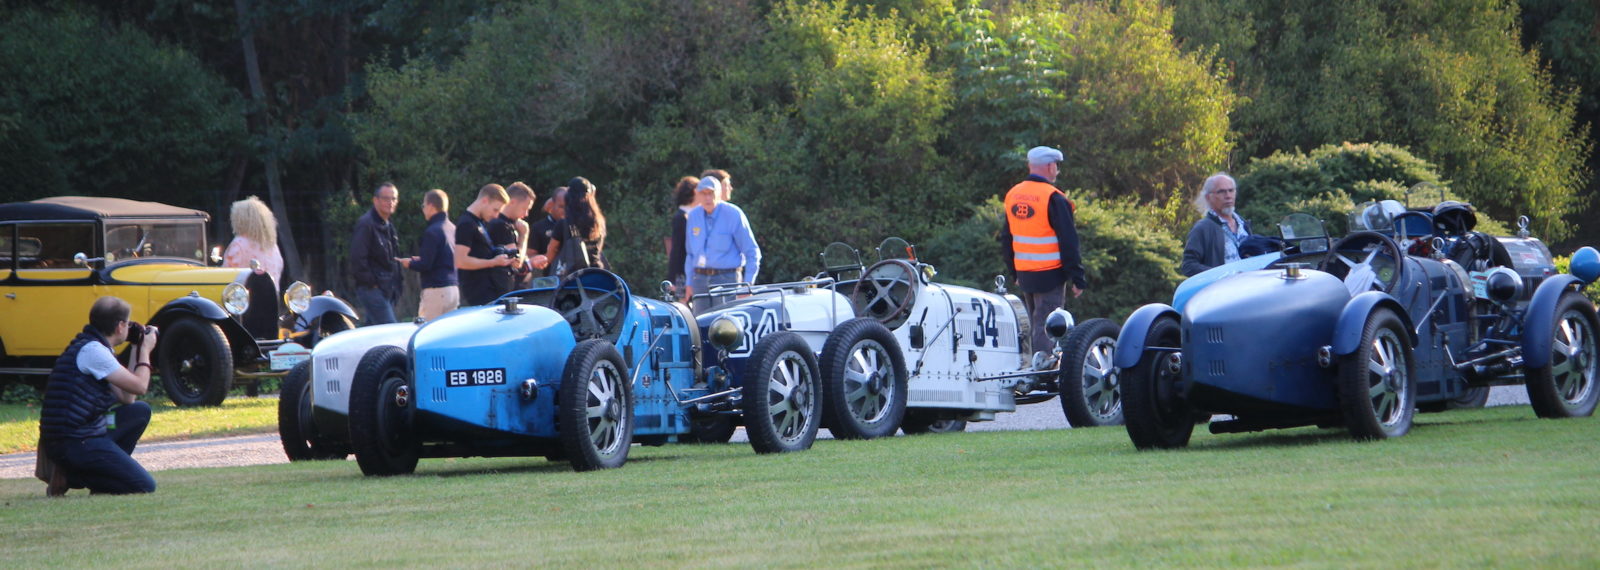 Présentation voitures Bugatti Molsheim